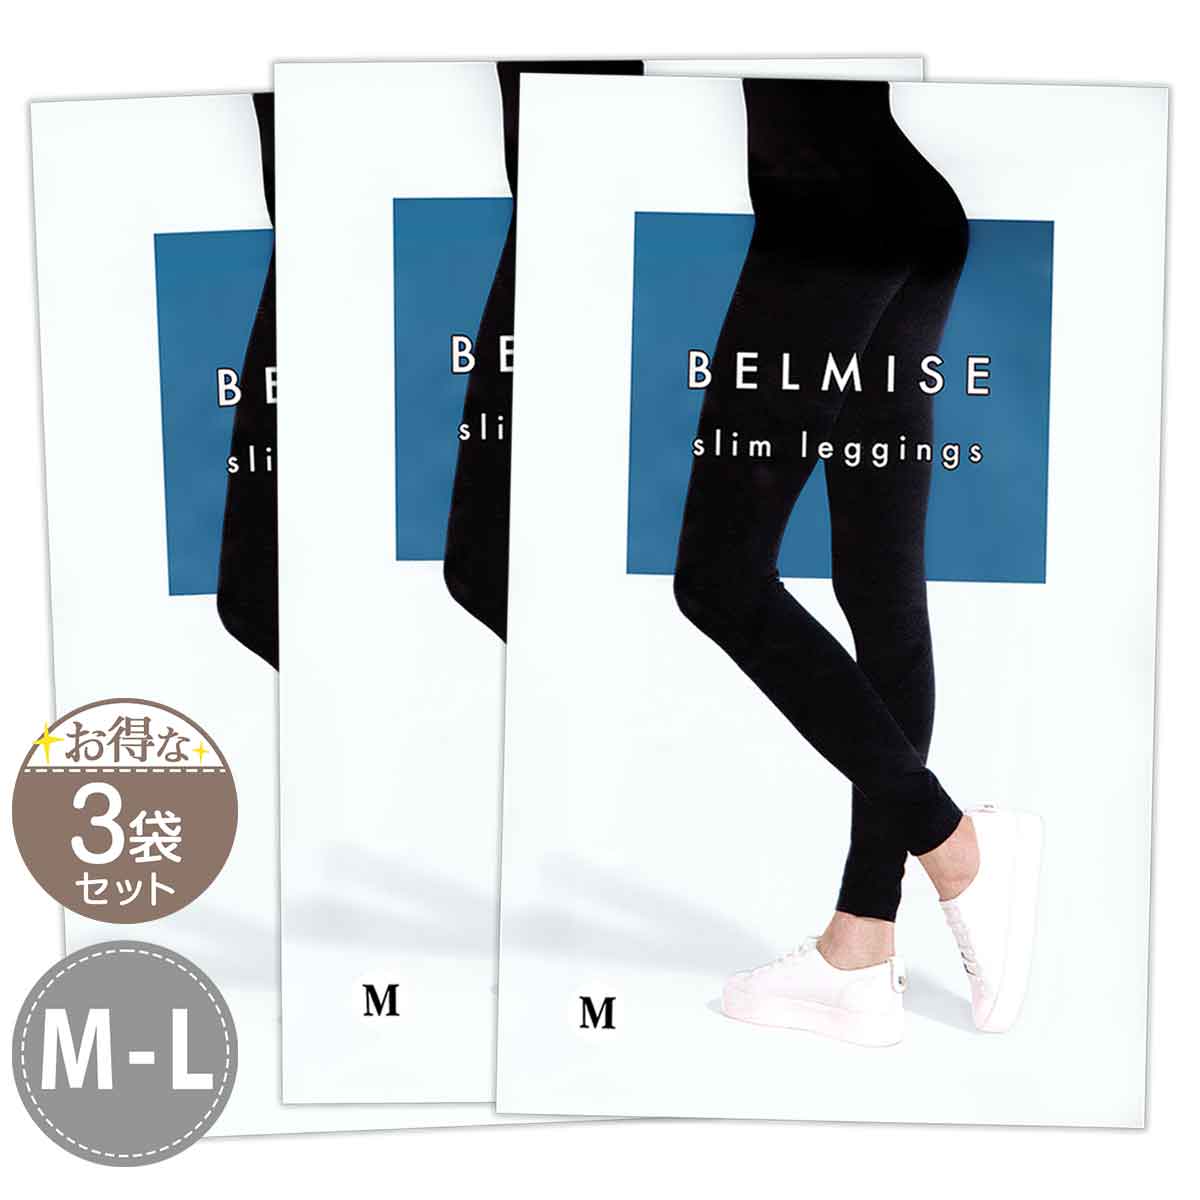 【 3袋セット 】 ベルミス スリムレギンス BELMISE Slim leggings M-Lサイズ Mサイズ Lサイズ メール便送料無料NYH /  ベルミスレギンスMS05-05 / BMLGSM-03P